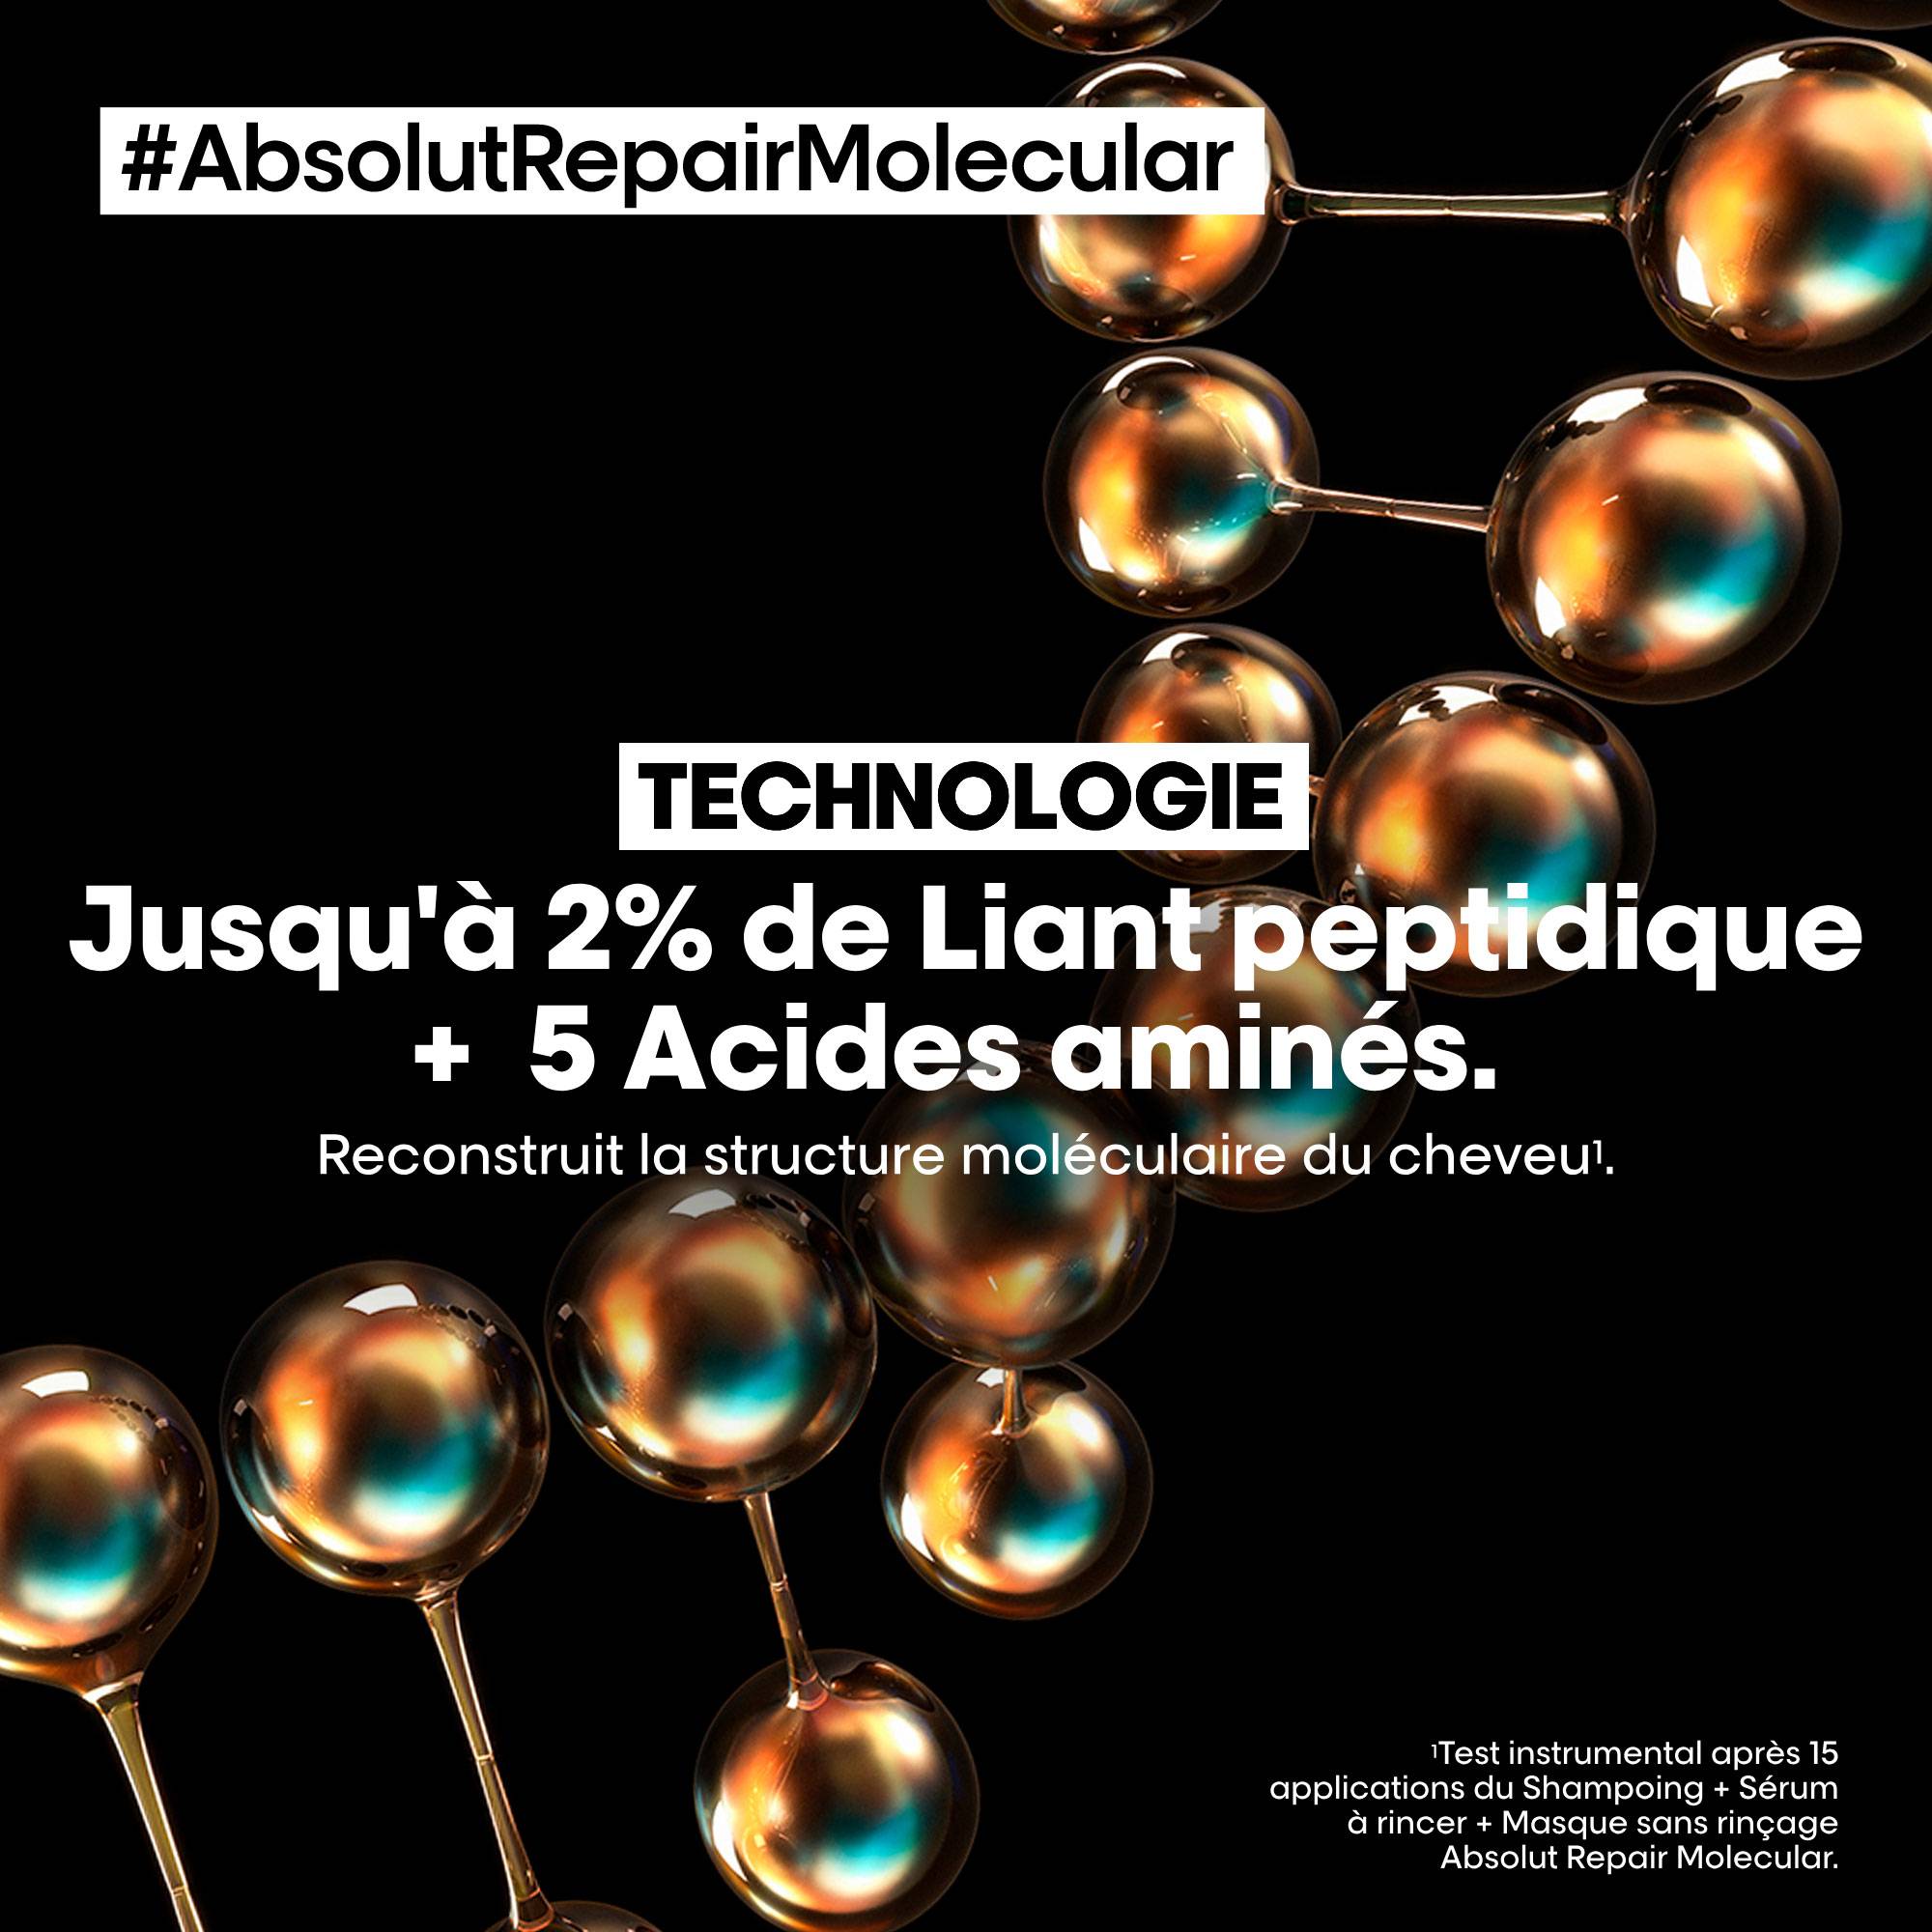 Shampoing réparateur moléculaire Absolut Repair Molecular de la marque L'Oréal Professionnel Contenance 500ml - 3